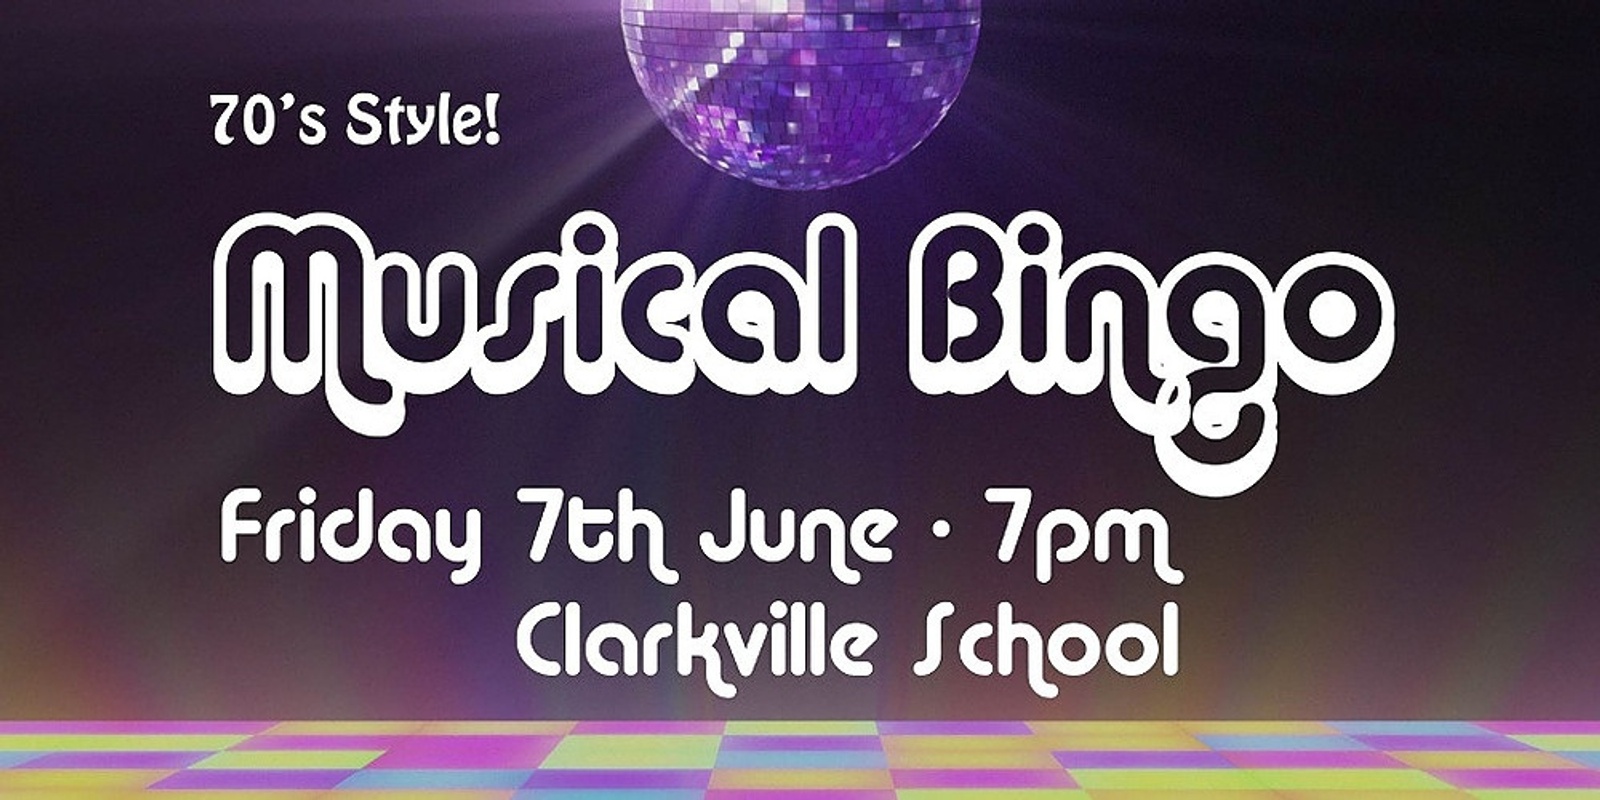 Banner image for Clarkville School Musical Bingo